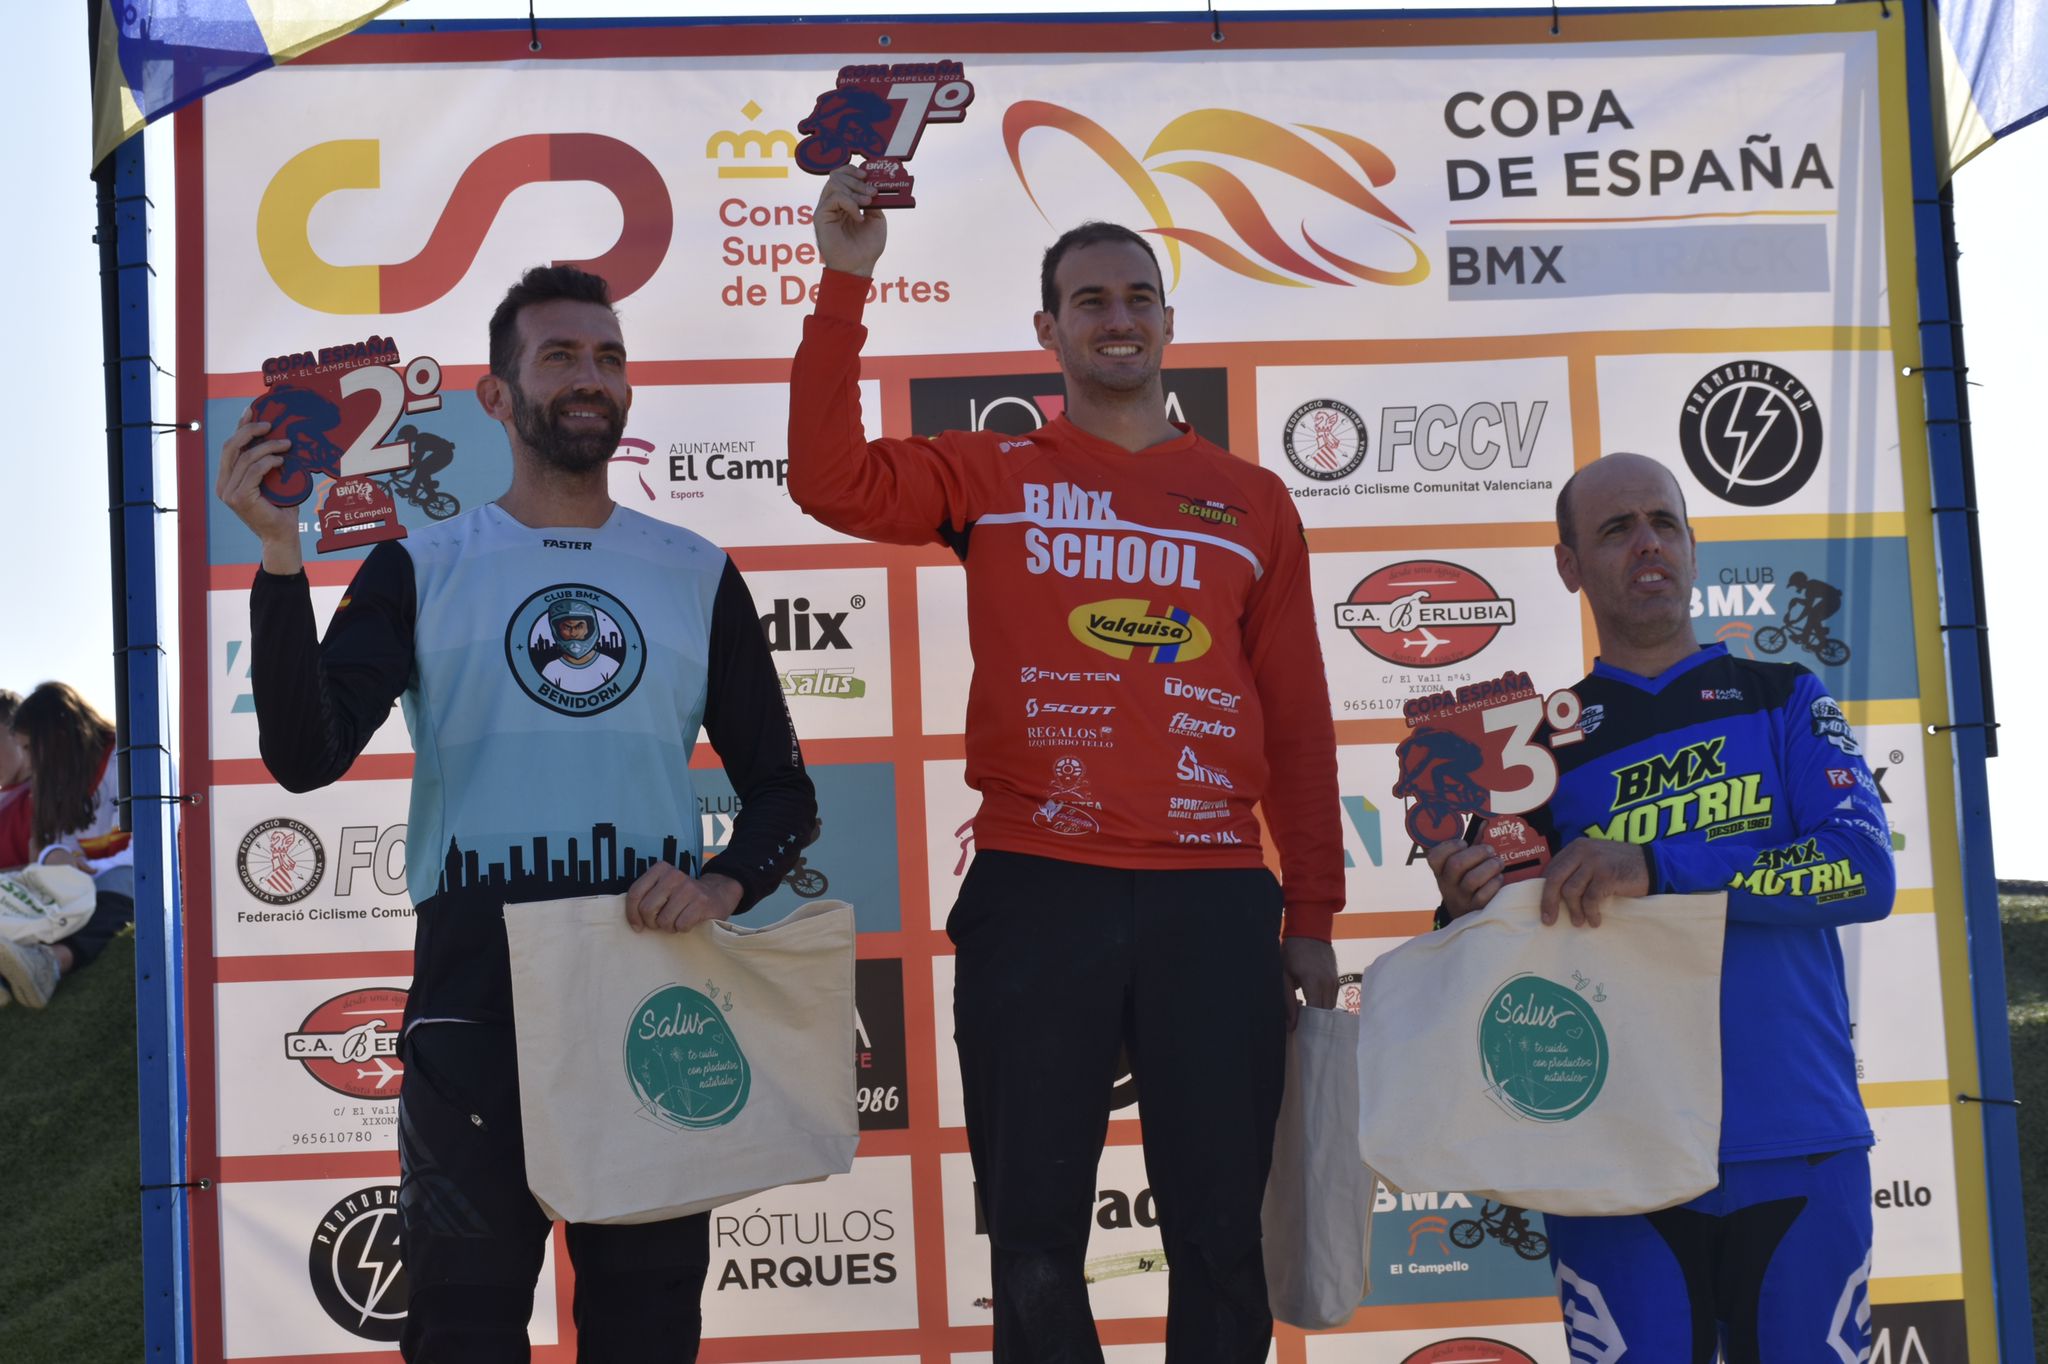 Grandes resultados para los aragoneses en la final de la Copa de España de BMX